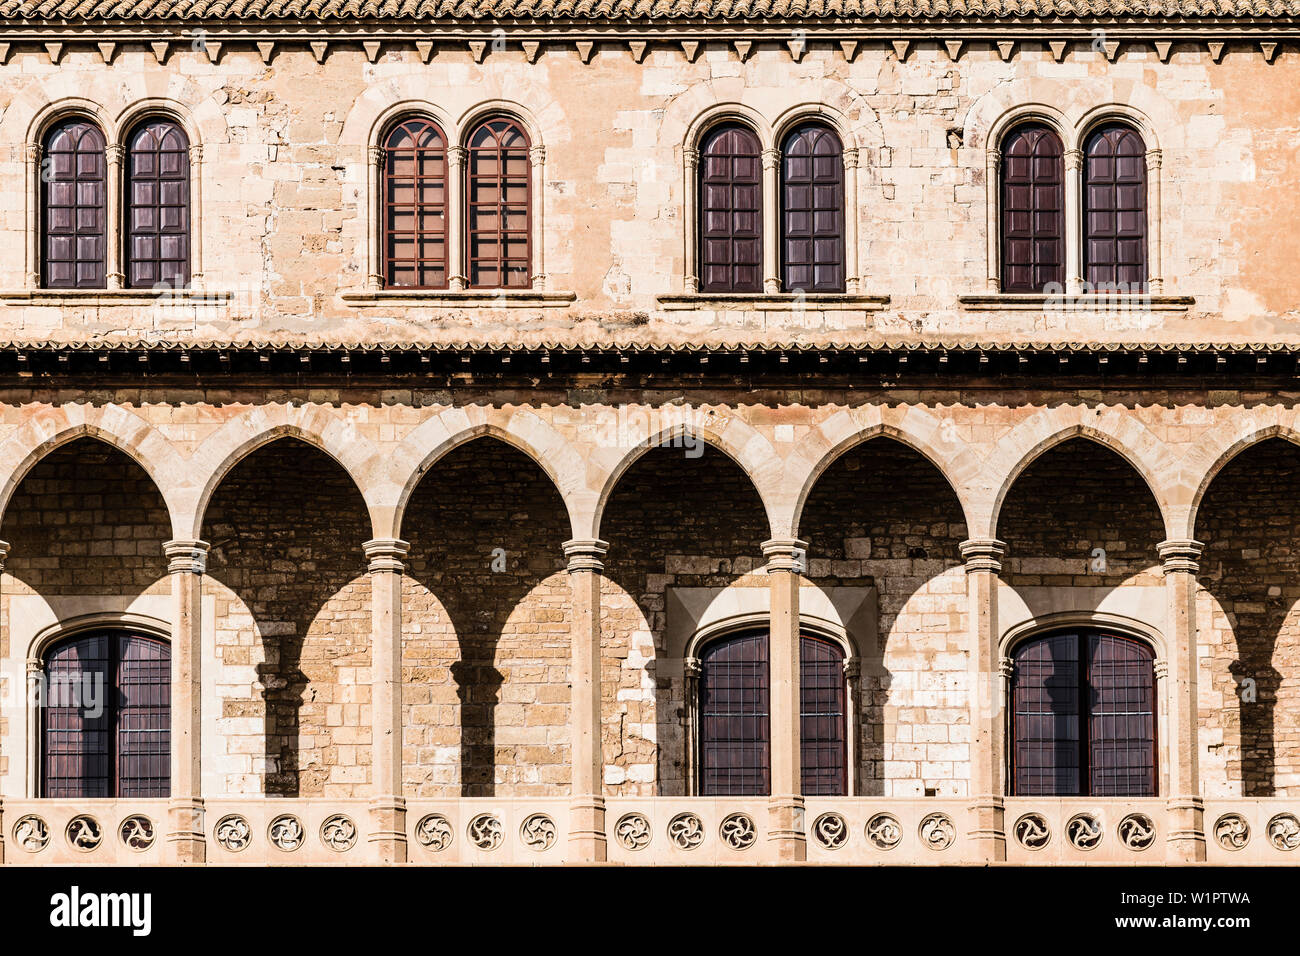 Facade, Almudaina Palace, Palma de Mallorca, Mallorca, Spain Stock Photo